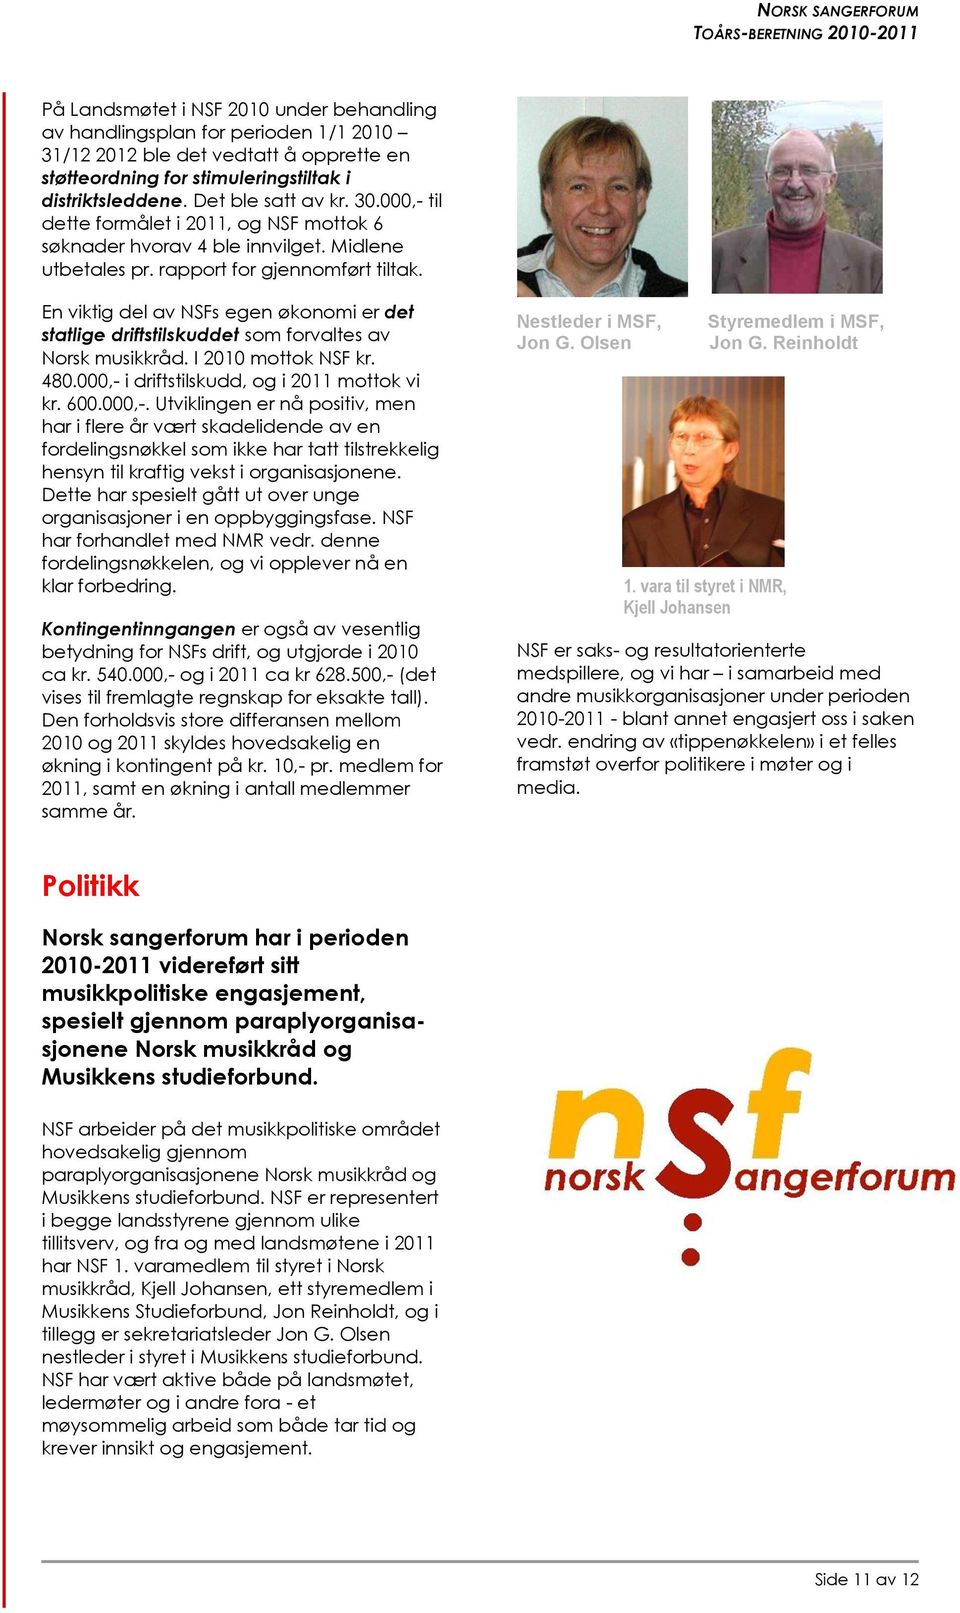 En viktig del av NSFs egen økonomi er det statlige driftstilskuddet som forvaltes av Norsk musikkråd. I 2010 mottok NSF kr. 480.000,- 